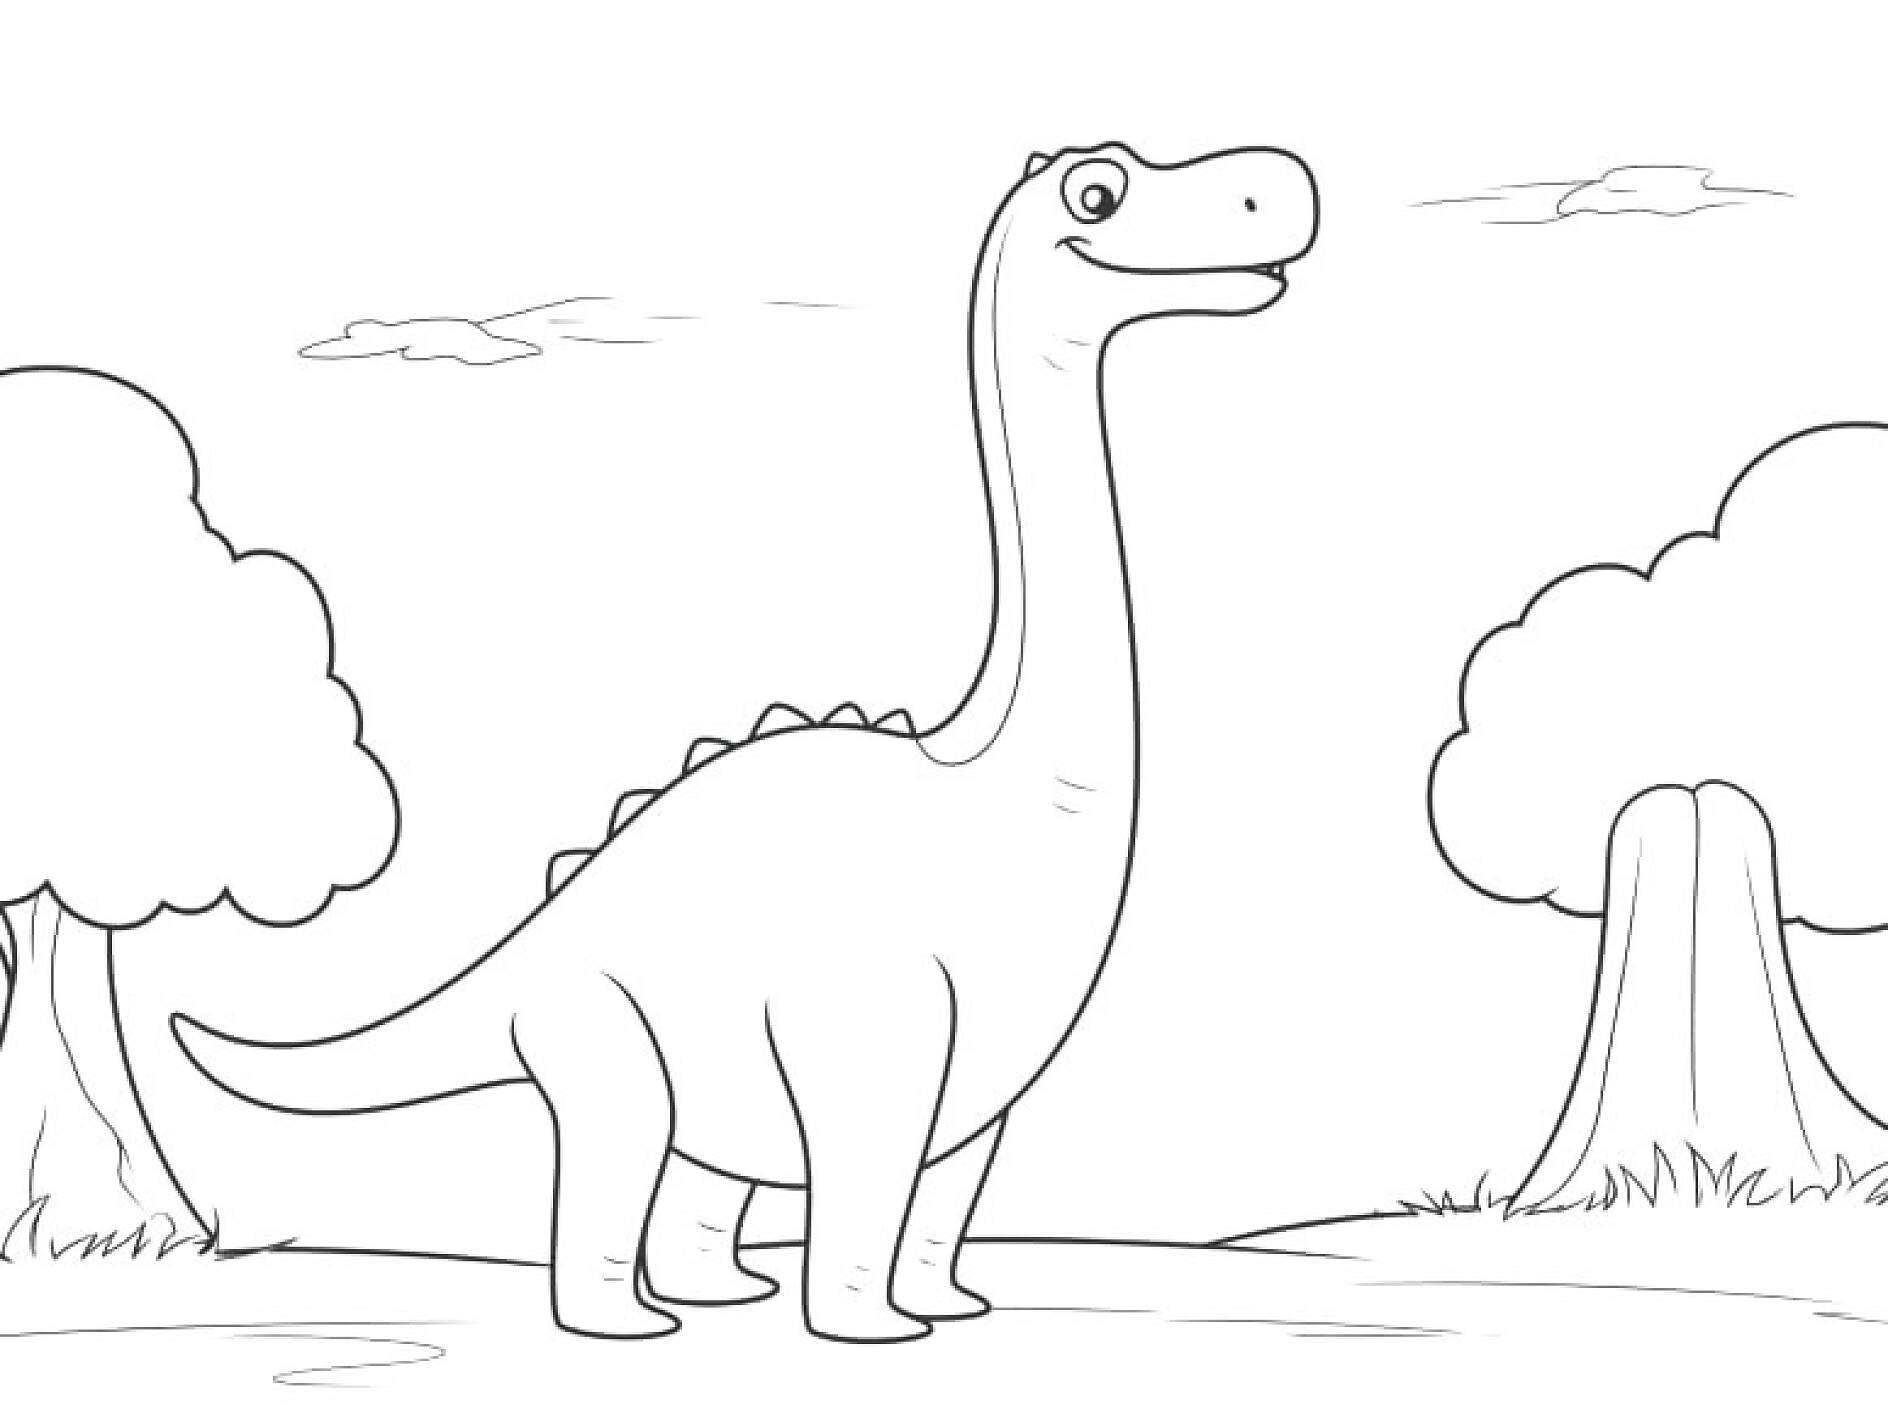 Malvorlagen Dinosaurier zum kostenlosen Download